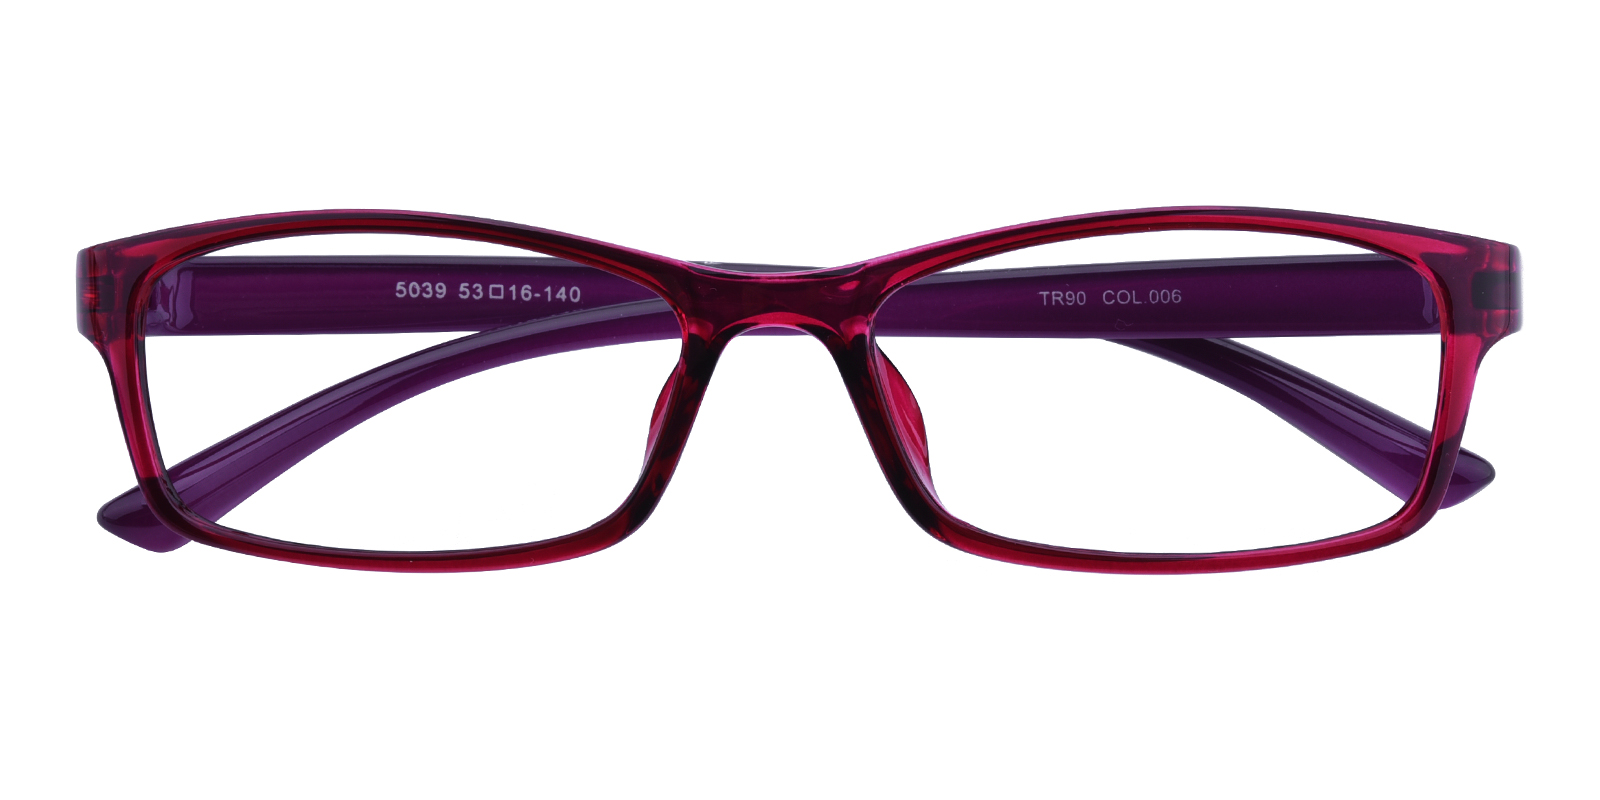 Women S Rectangle Eyeglasses Full Frame Tr90 Purple Fp1764